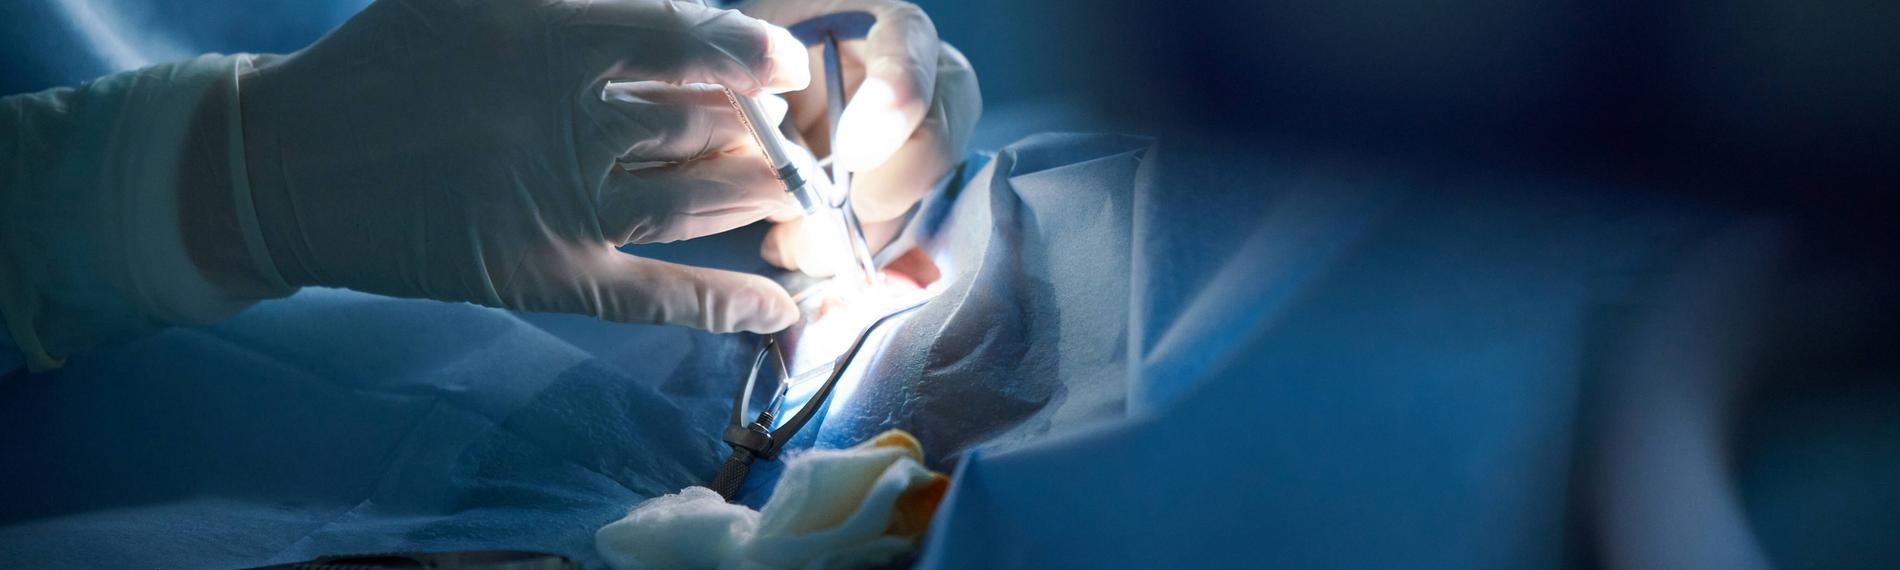 Archiv: Chirurgen während einer Operation (Symbolfoto)